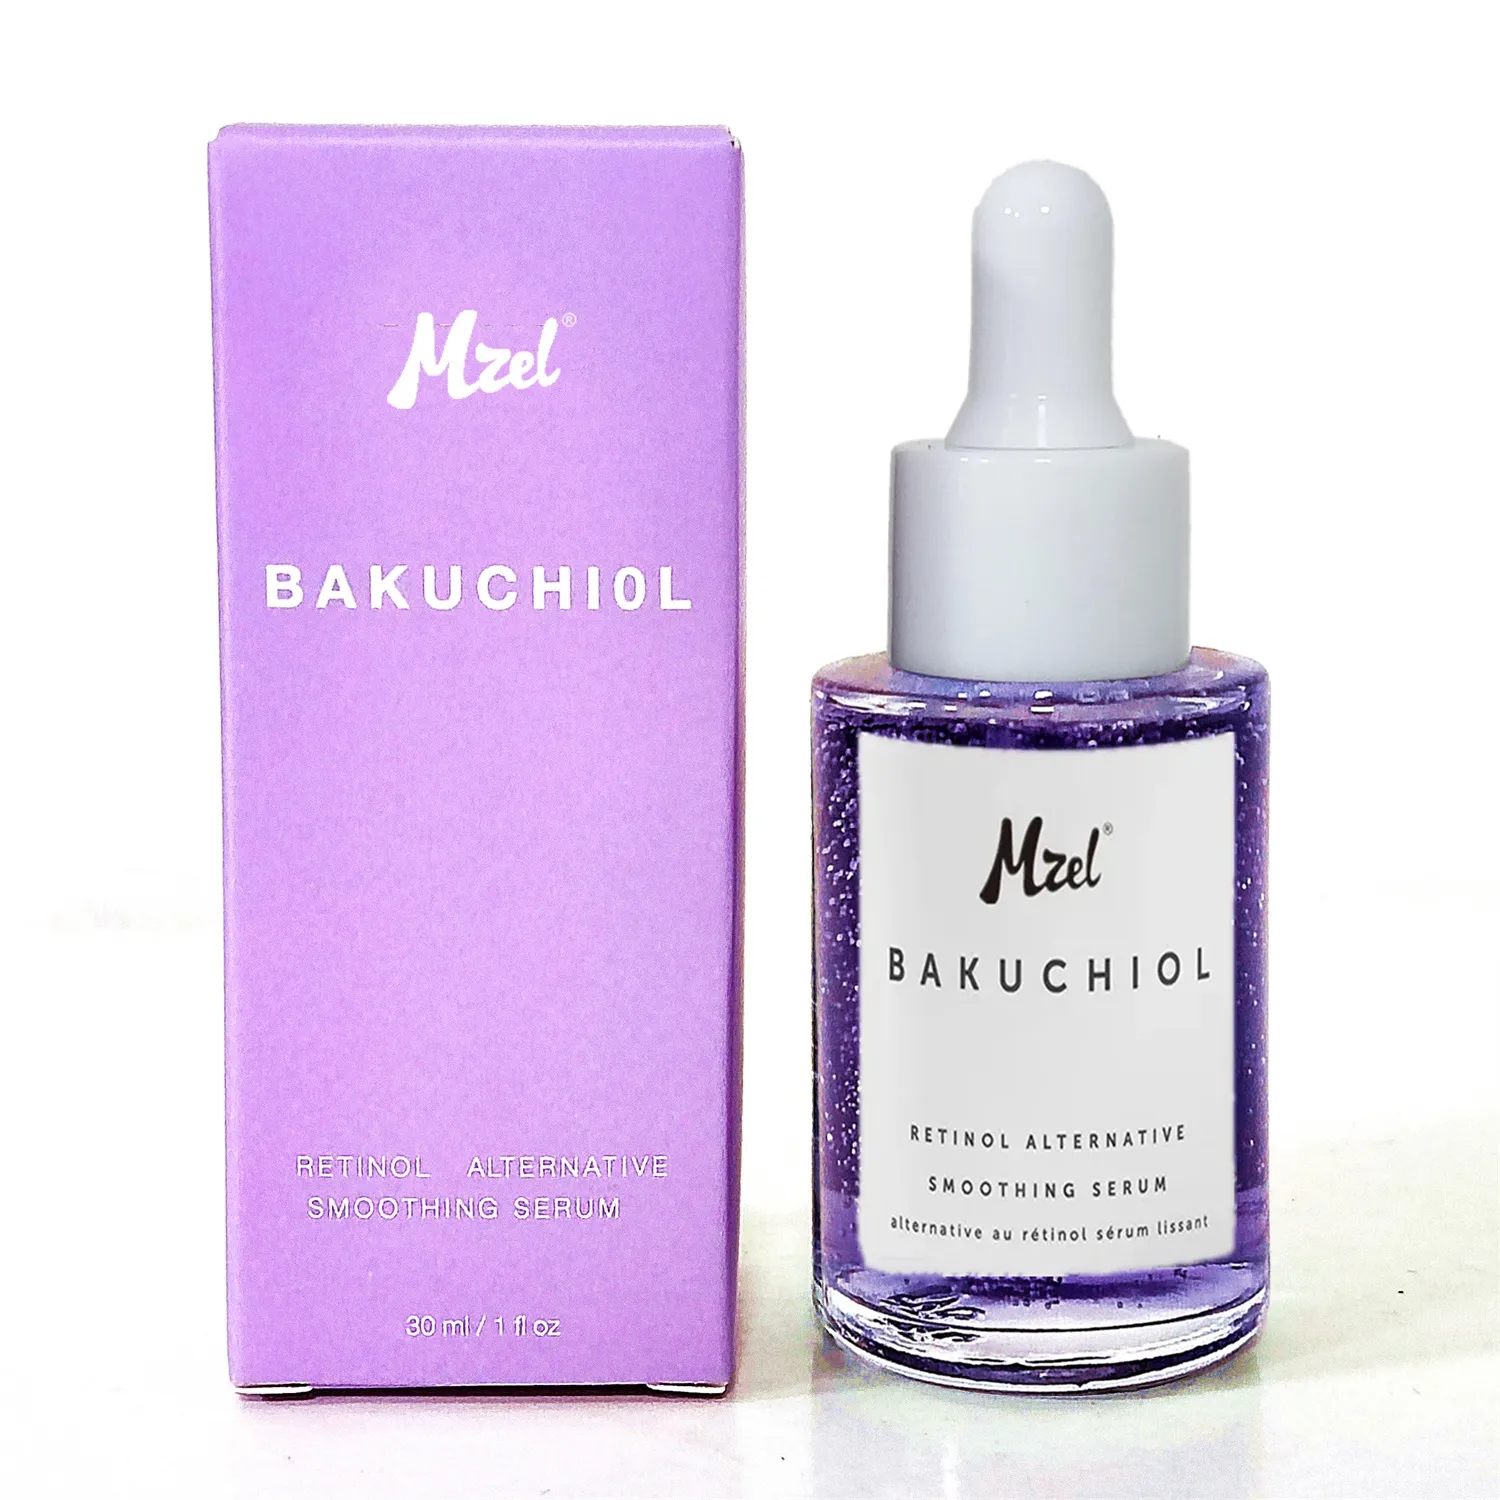 Private Label Bakuchiol Retinol Alternatives glätten des Gesichts serum, hydrat isieren und reduzieren das Auftreten feiner Linien und Falten